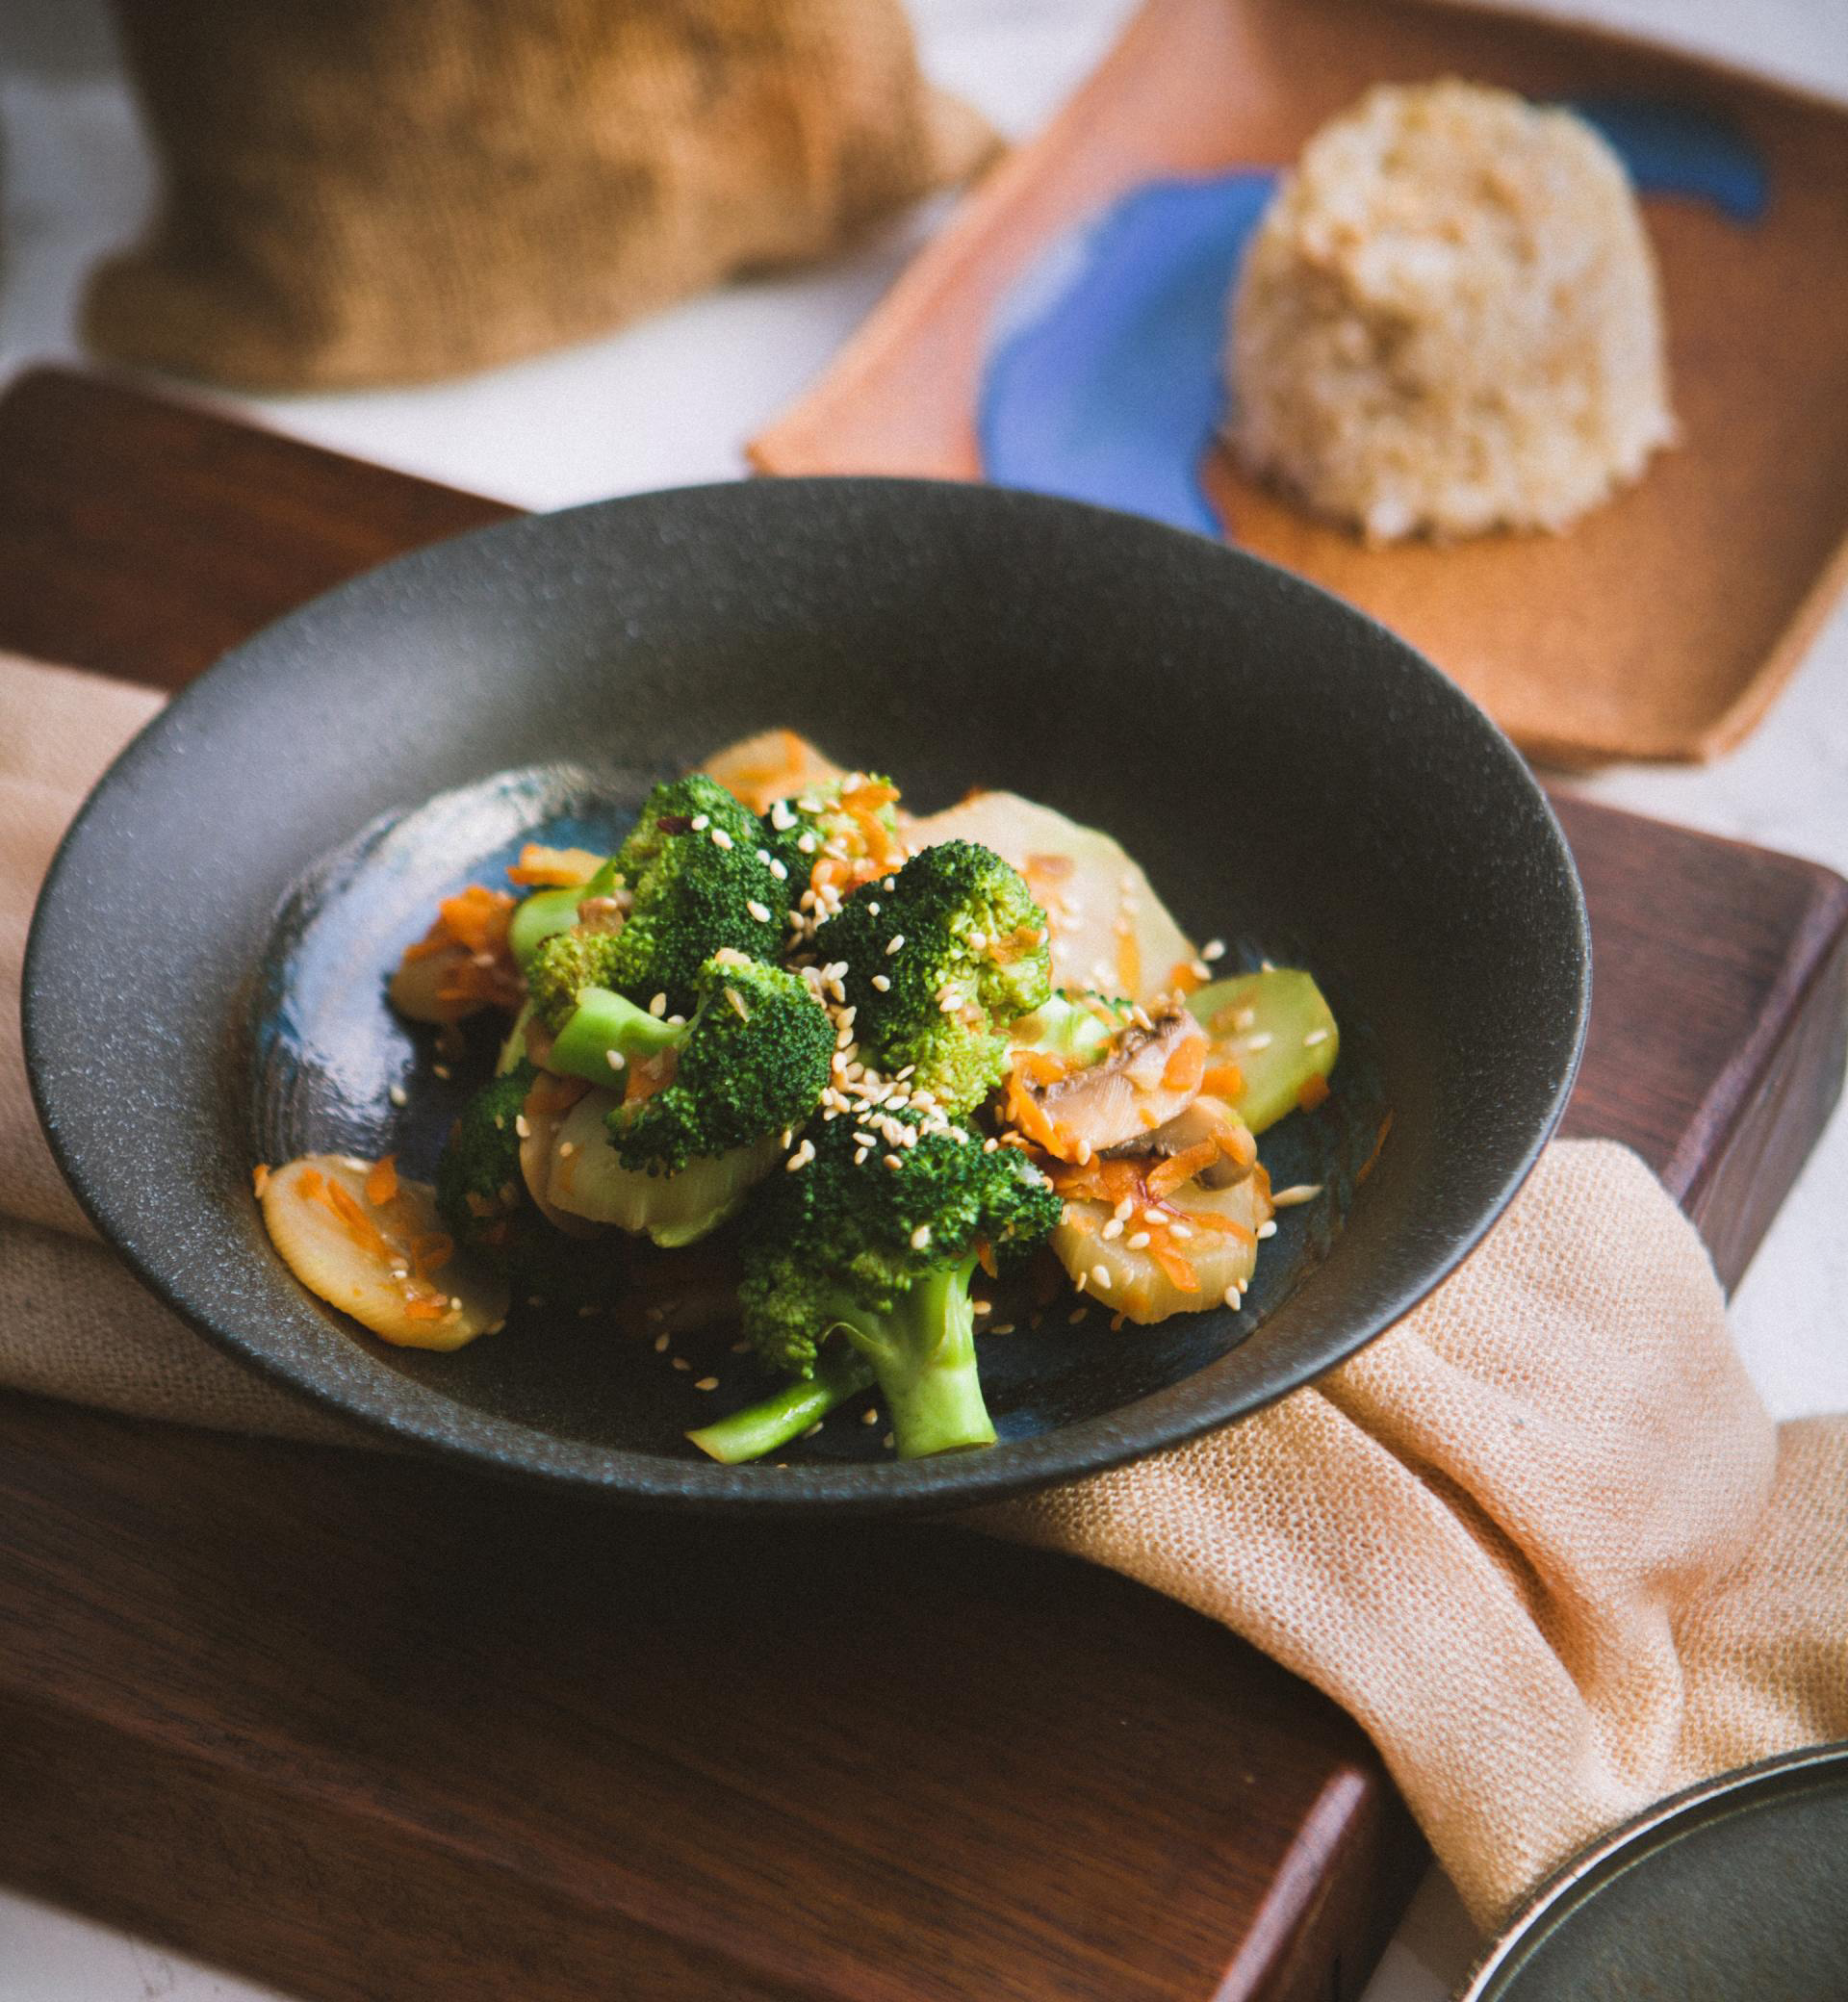 Tulum Catering Menu - Plated Dinner - Vegetarian And Vegan Options